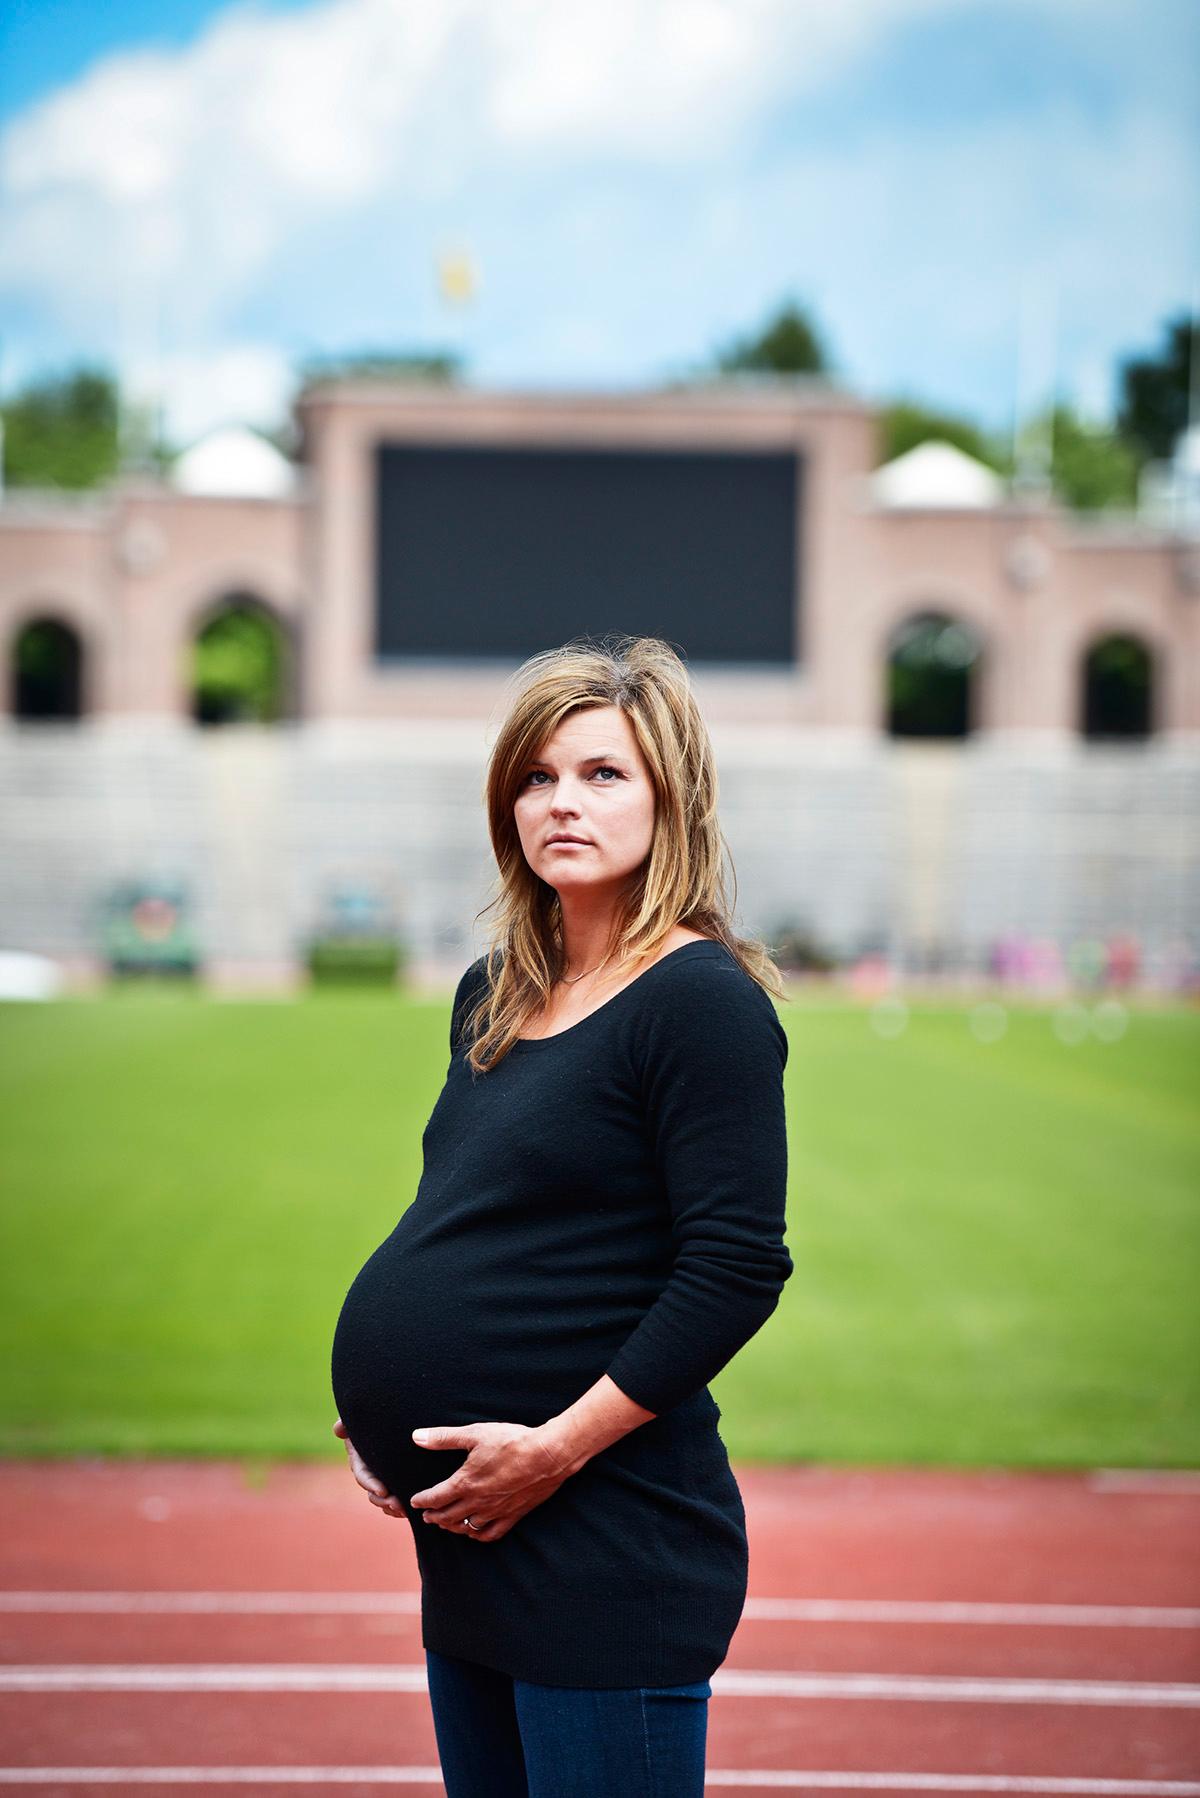 2013 tog hon paus för att föda dottern Majken.